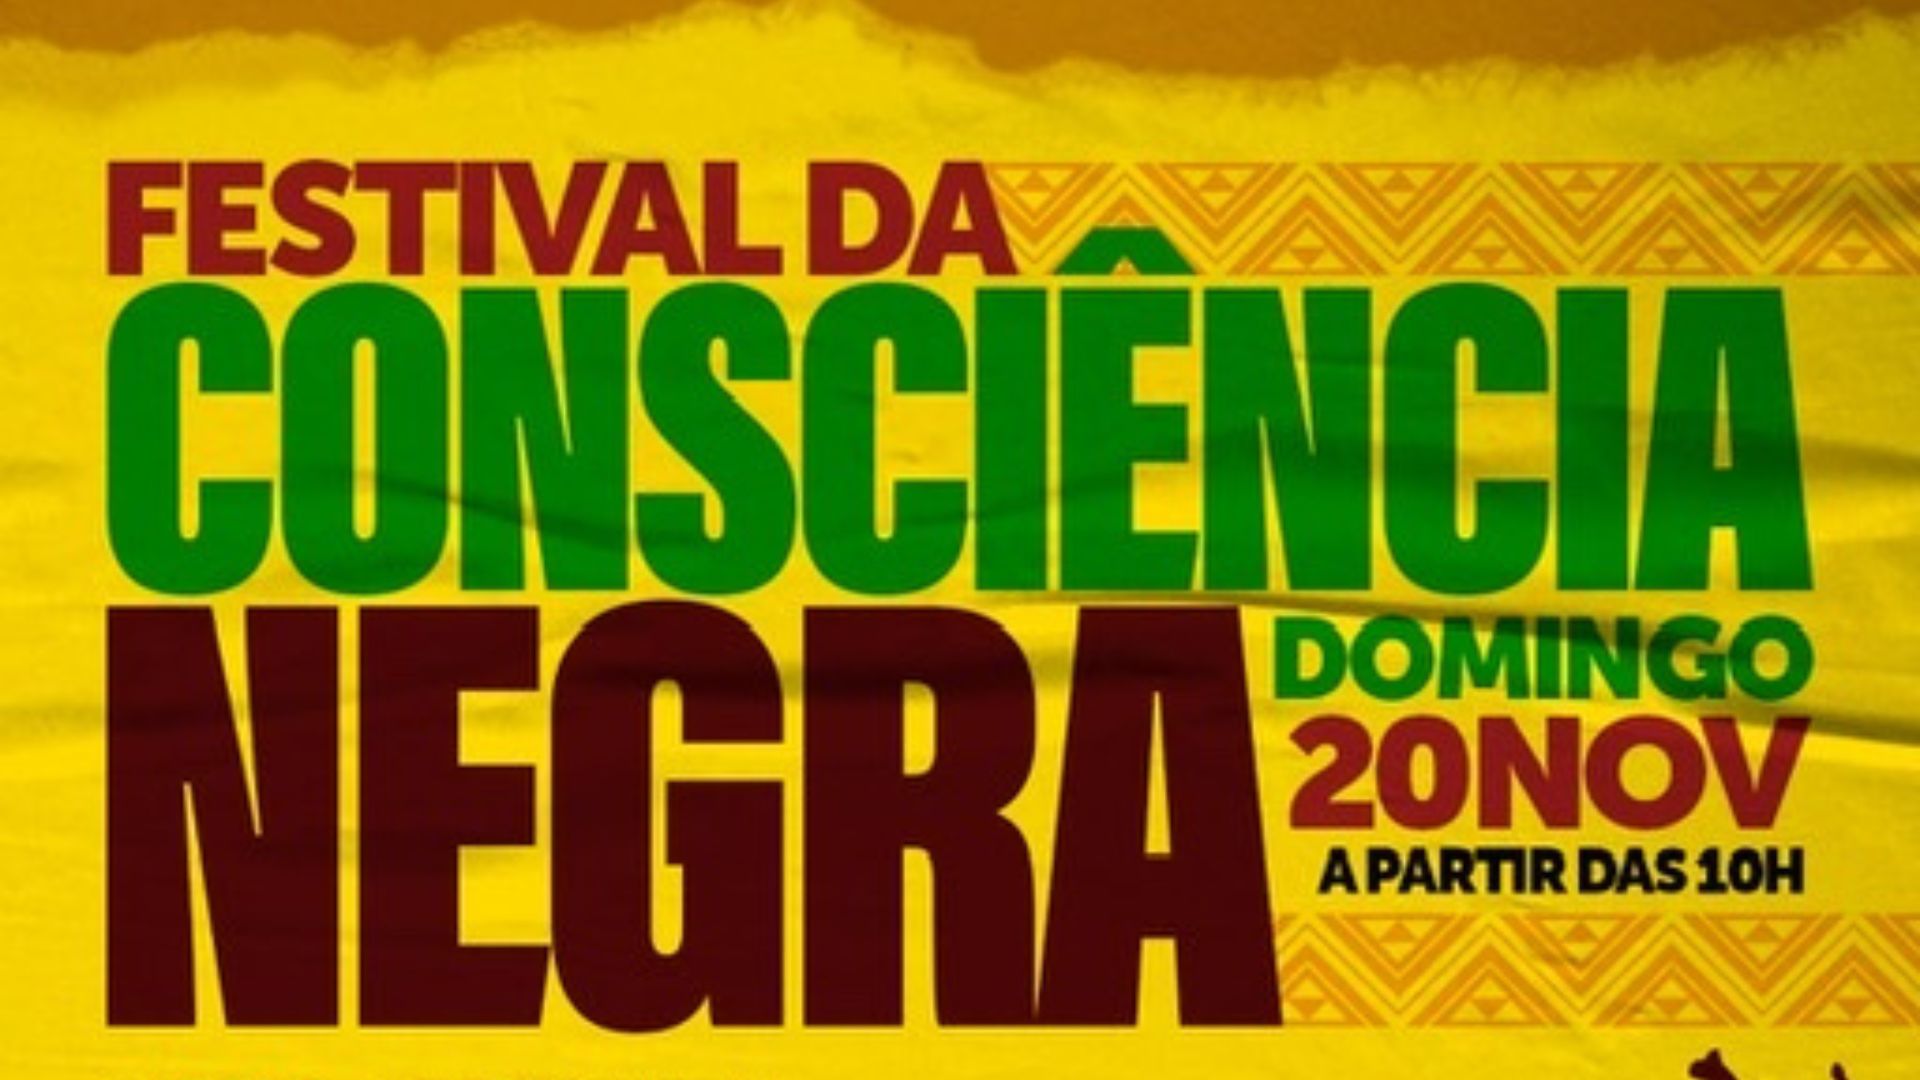 Evento que celebra o Dia da Consciência Negra é no próximo domingo (20) - Foto: Divulgação/Manauscult